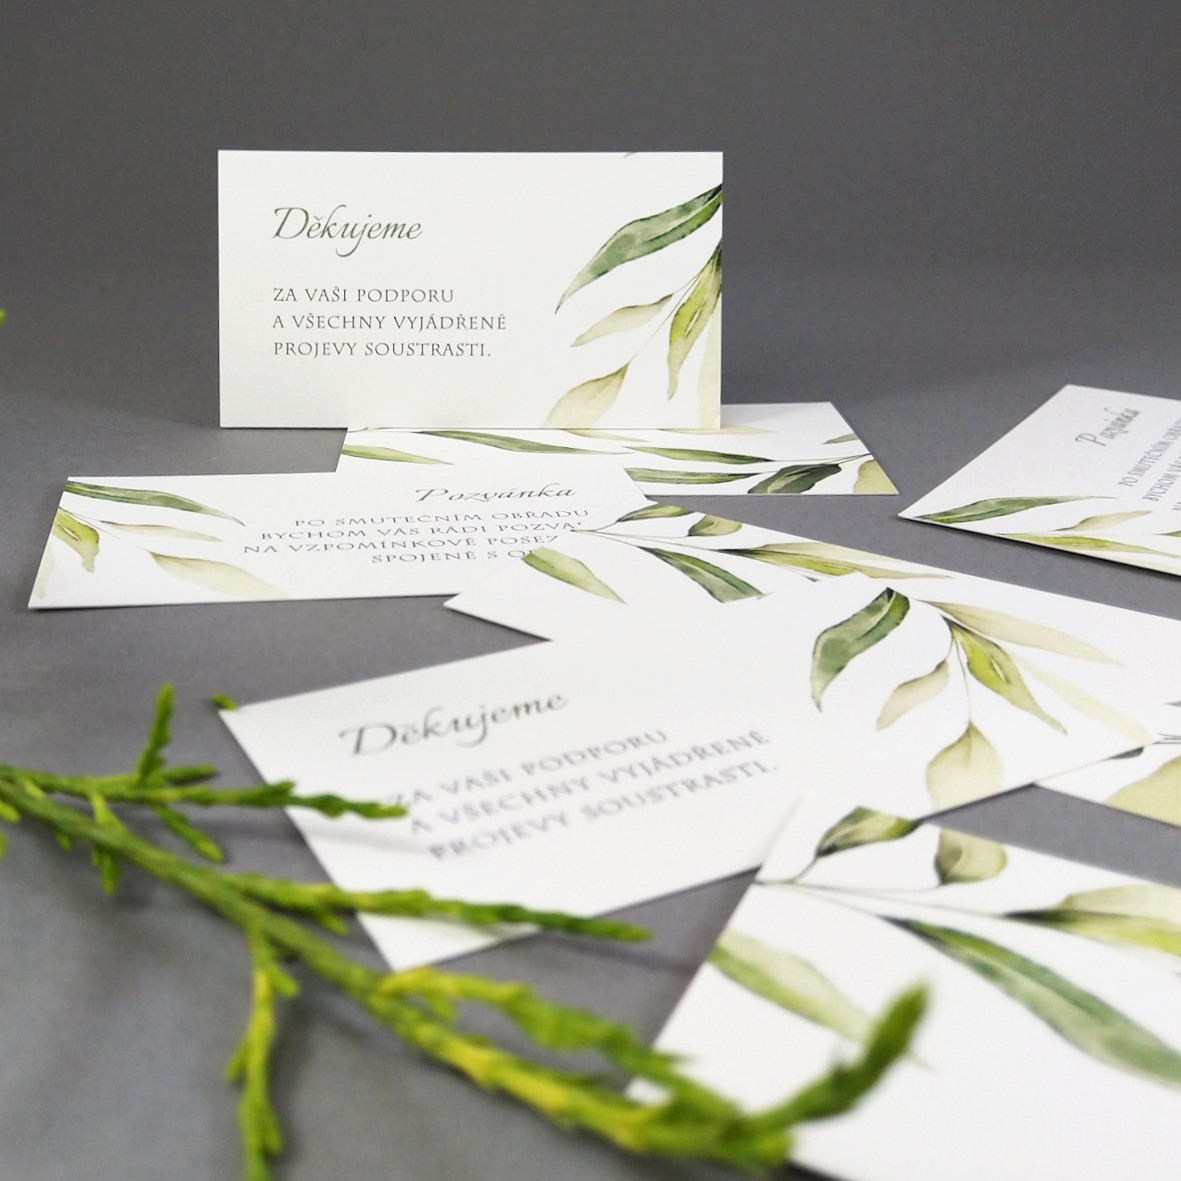 Pozvánka, informační karta – s motivem vrbové větvičky, formát 85 × 55 mm, oboustranná